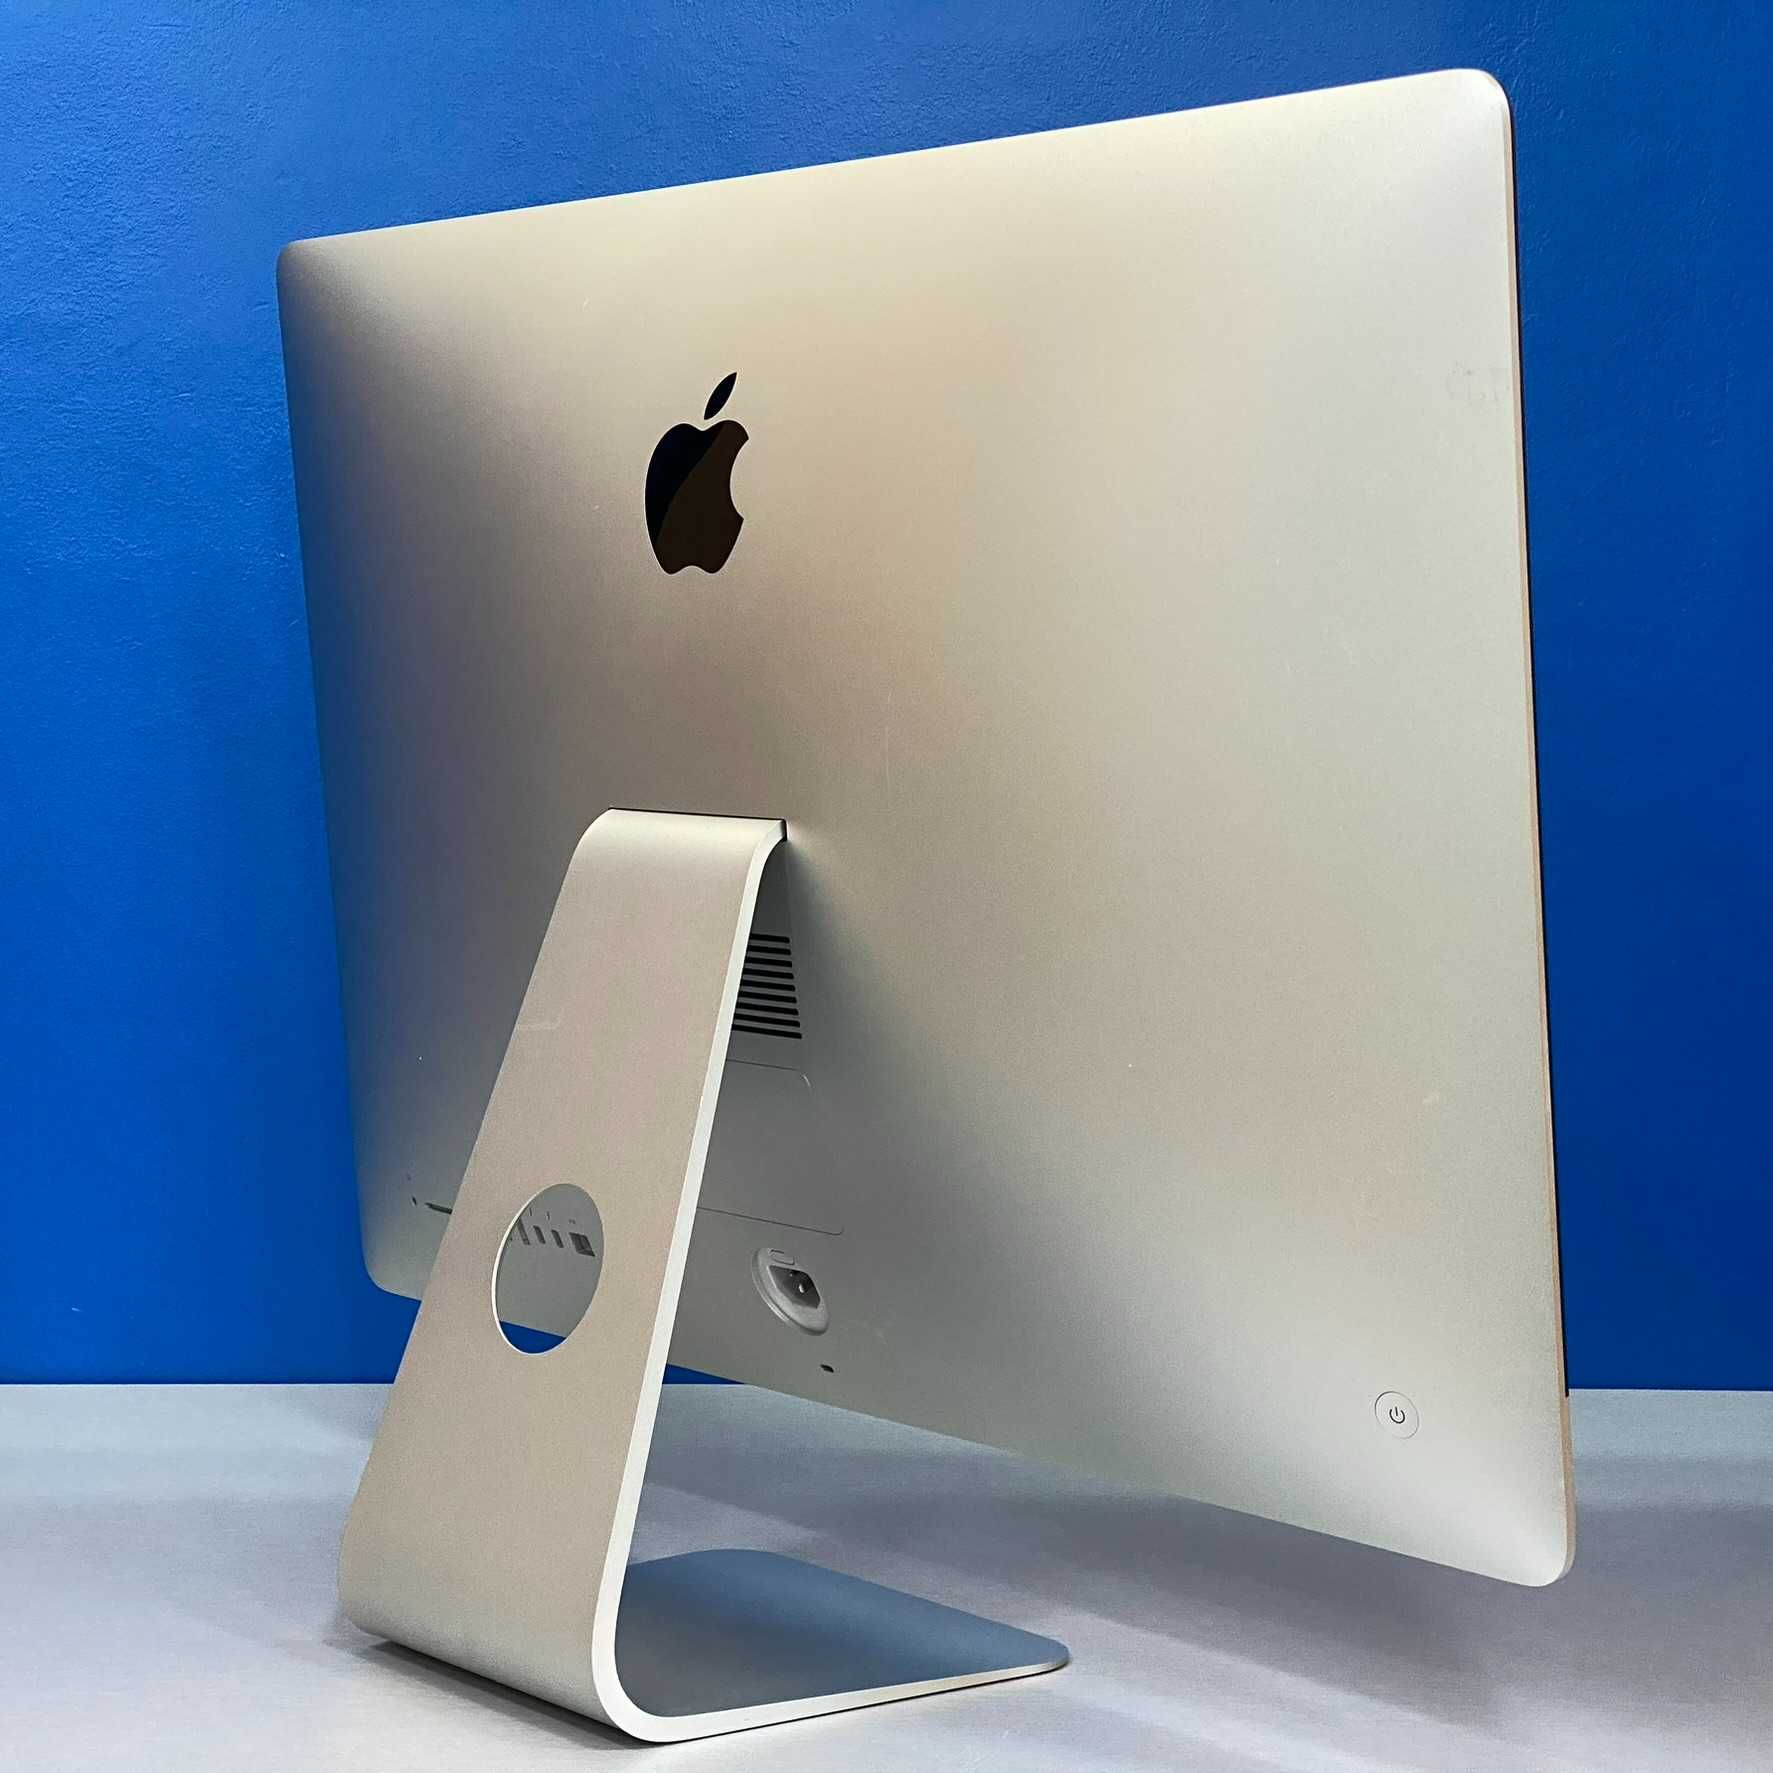 Apple iMac 27" 5K - A1419 - Late 2015 (i7/32GB/500GB SSD/R9 M395X 4GB)